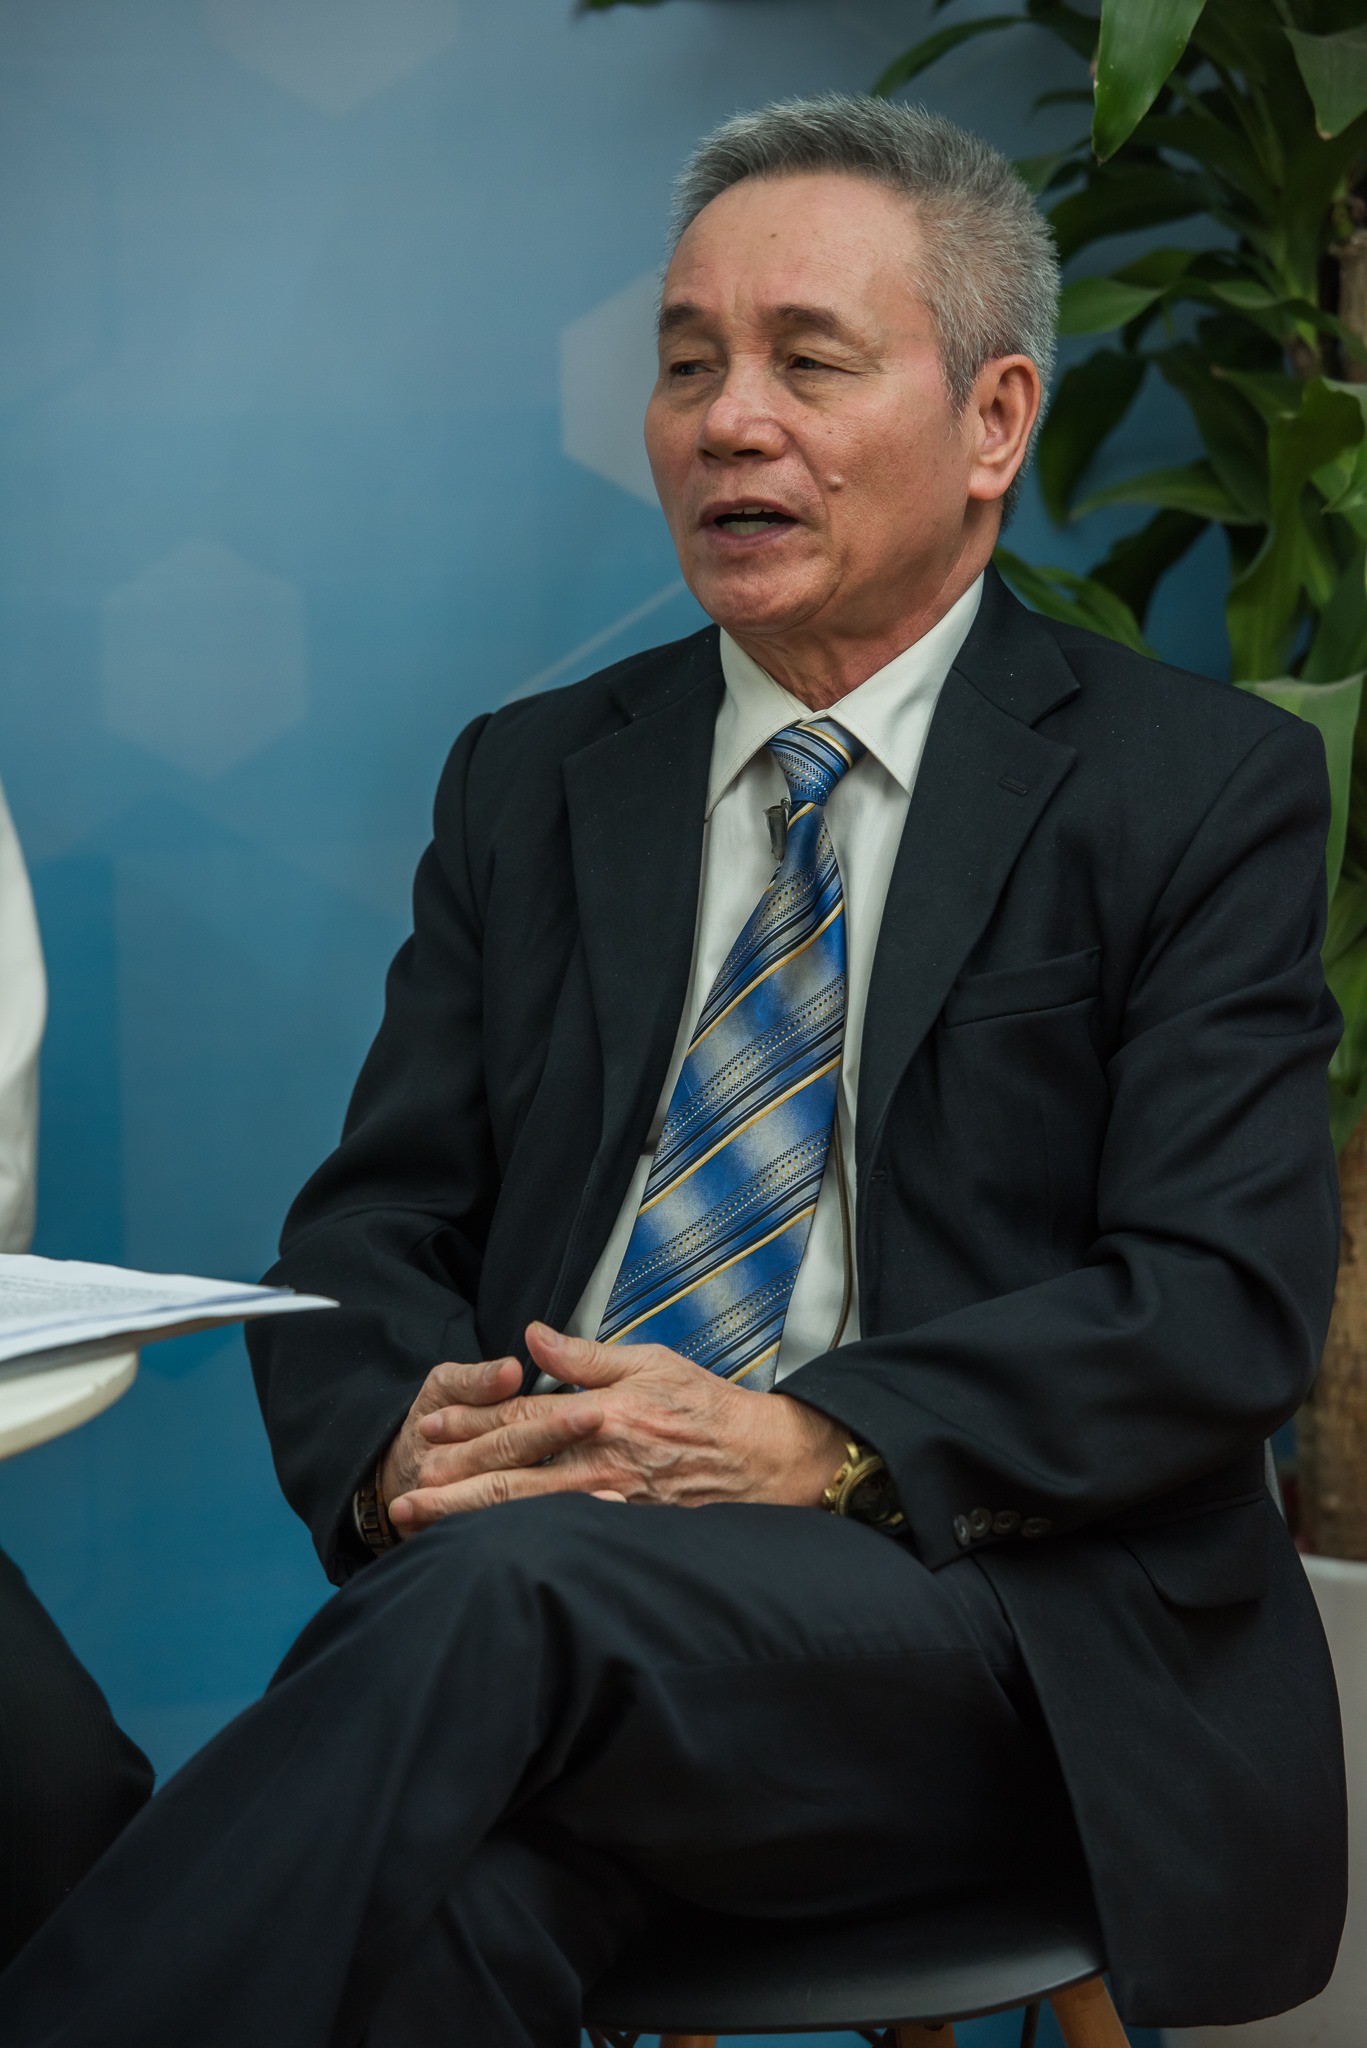 PGS.TS. Hồ Bá Do giảng viên cao cấp Học viện Quân Y. Hiện nay, ông đang là Phó chủ tịch Hội Y học Cổ truyền Việt Nam – Phó viện trưởng Viện thực phẩm chức năng Việt Nam.